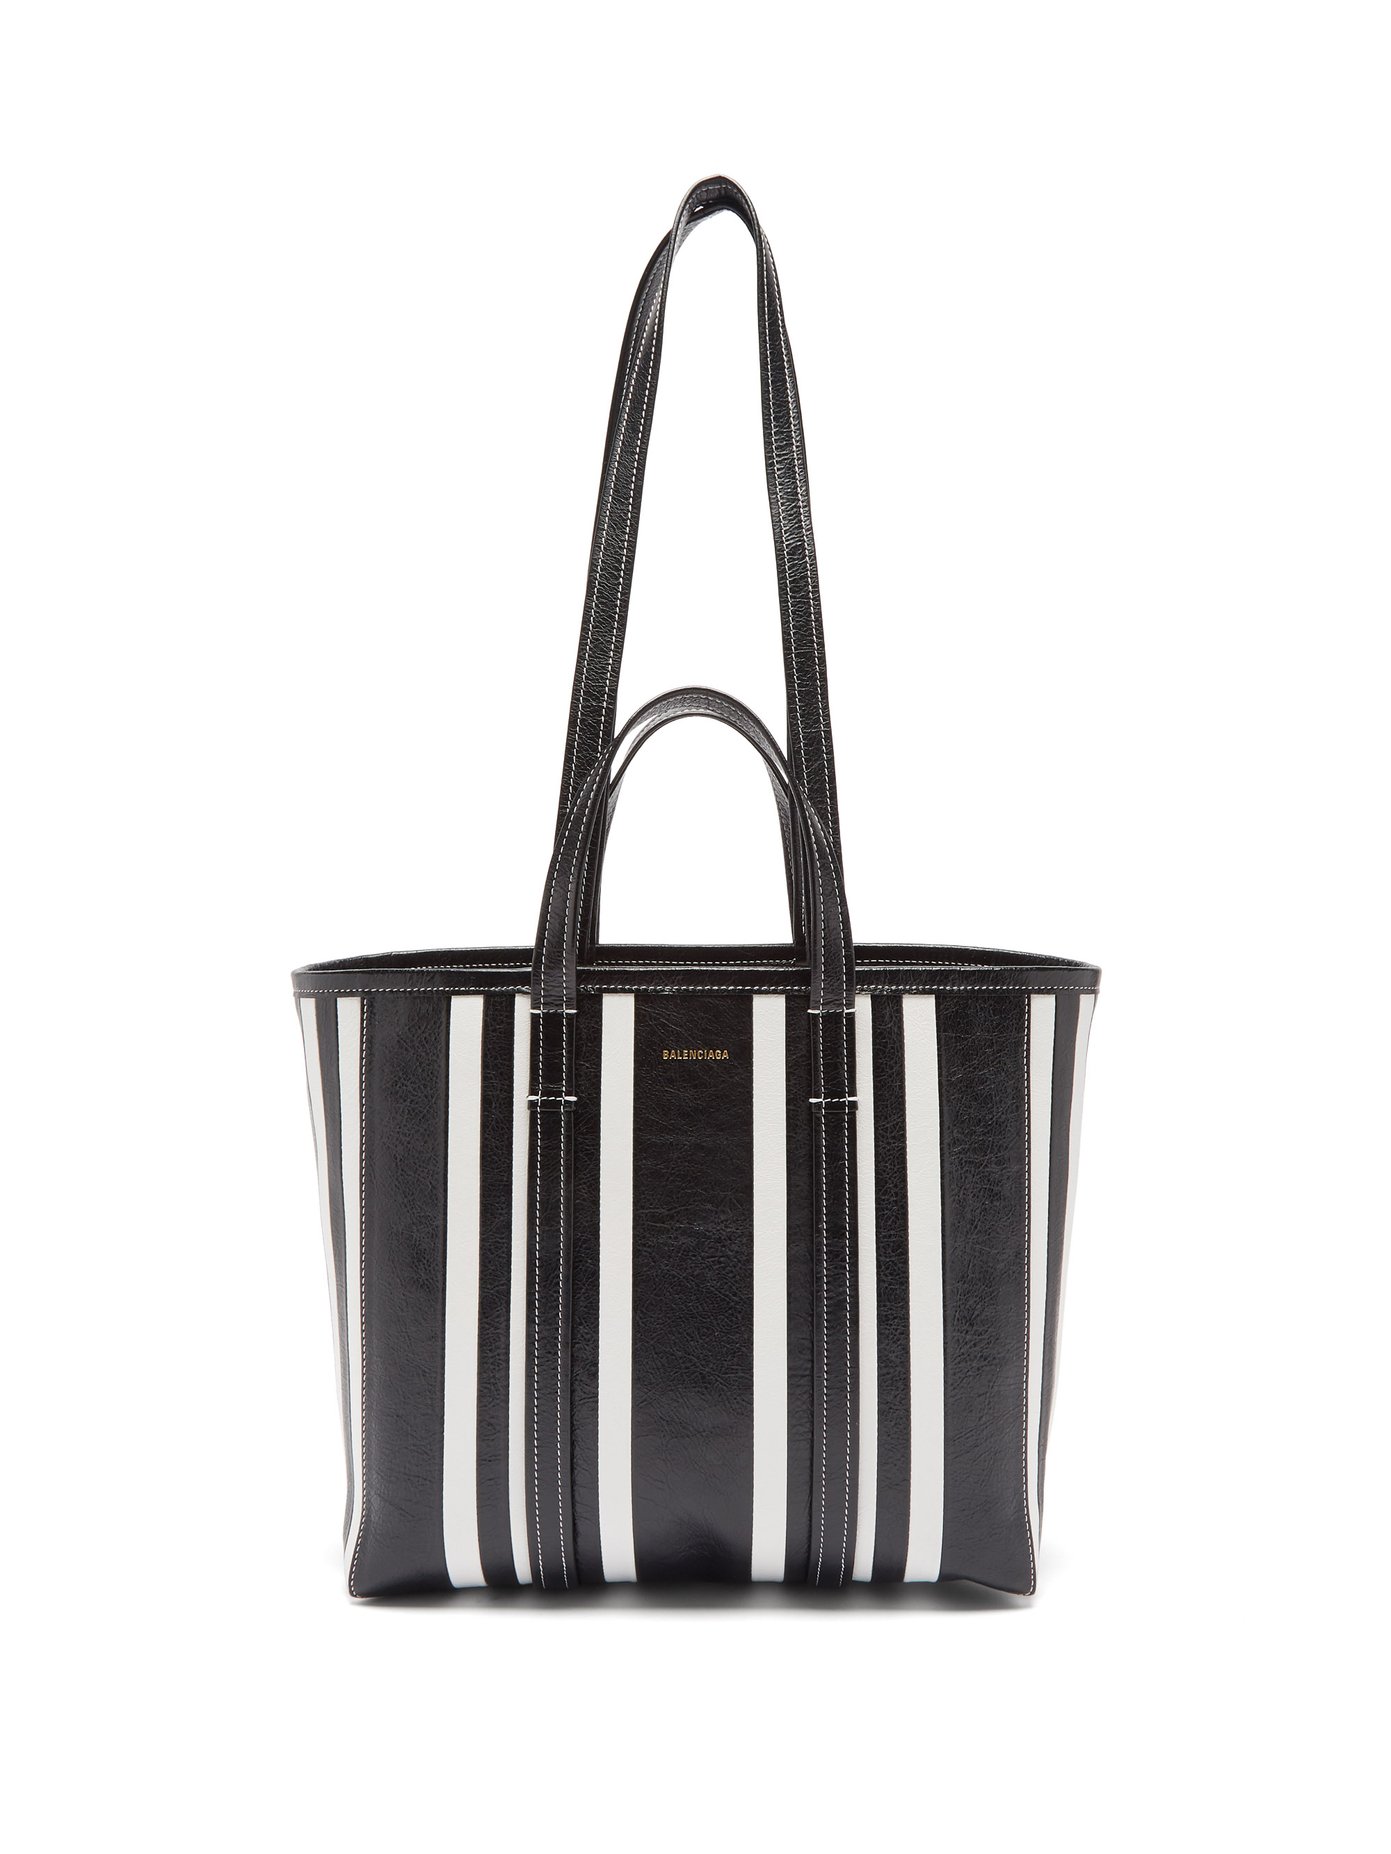 발렌시아가 바베스 토트백 미디움 Balenciaga Black Barbes medium striped-leather tote bag